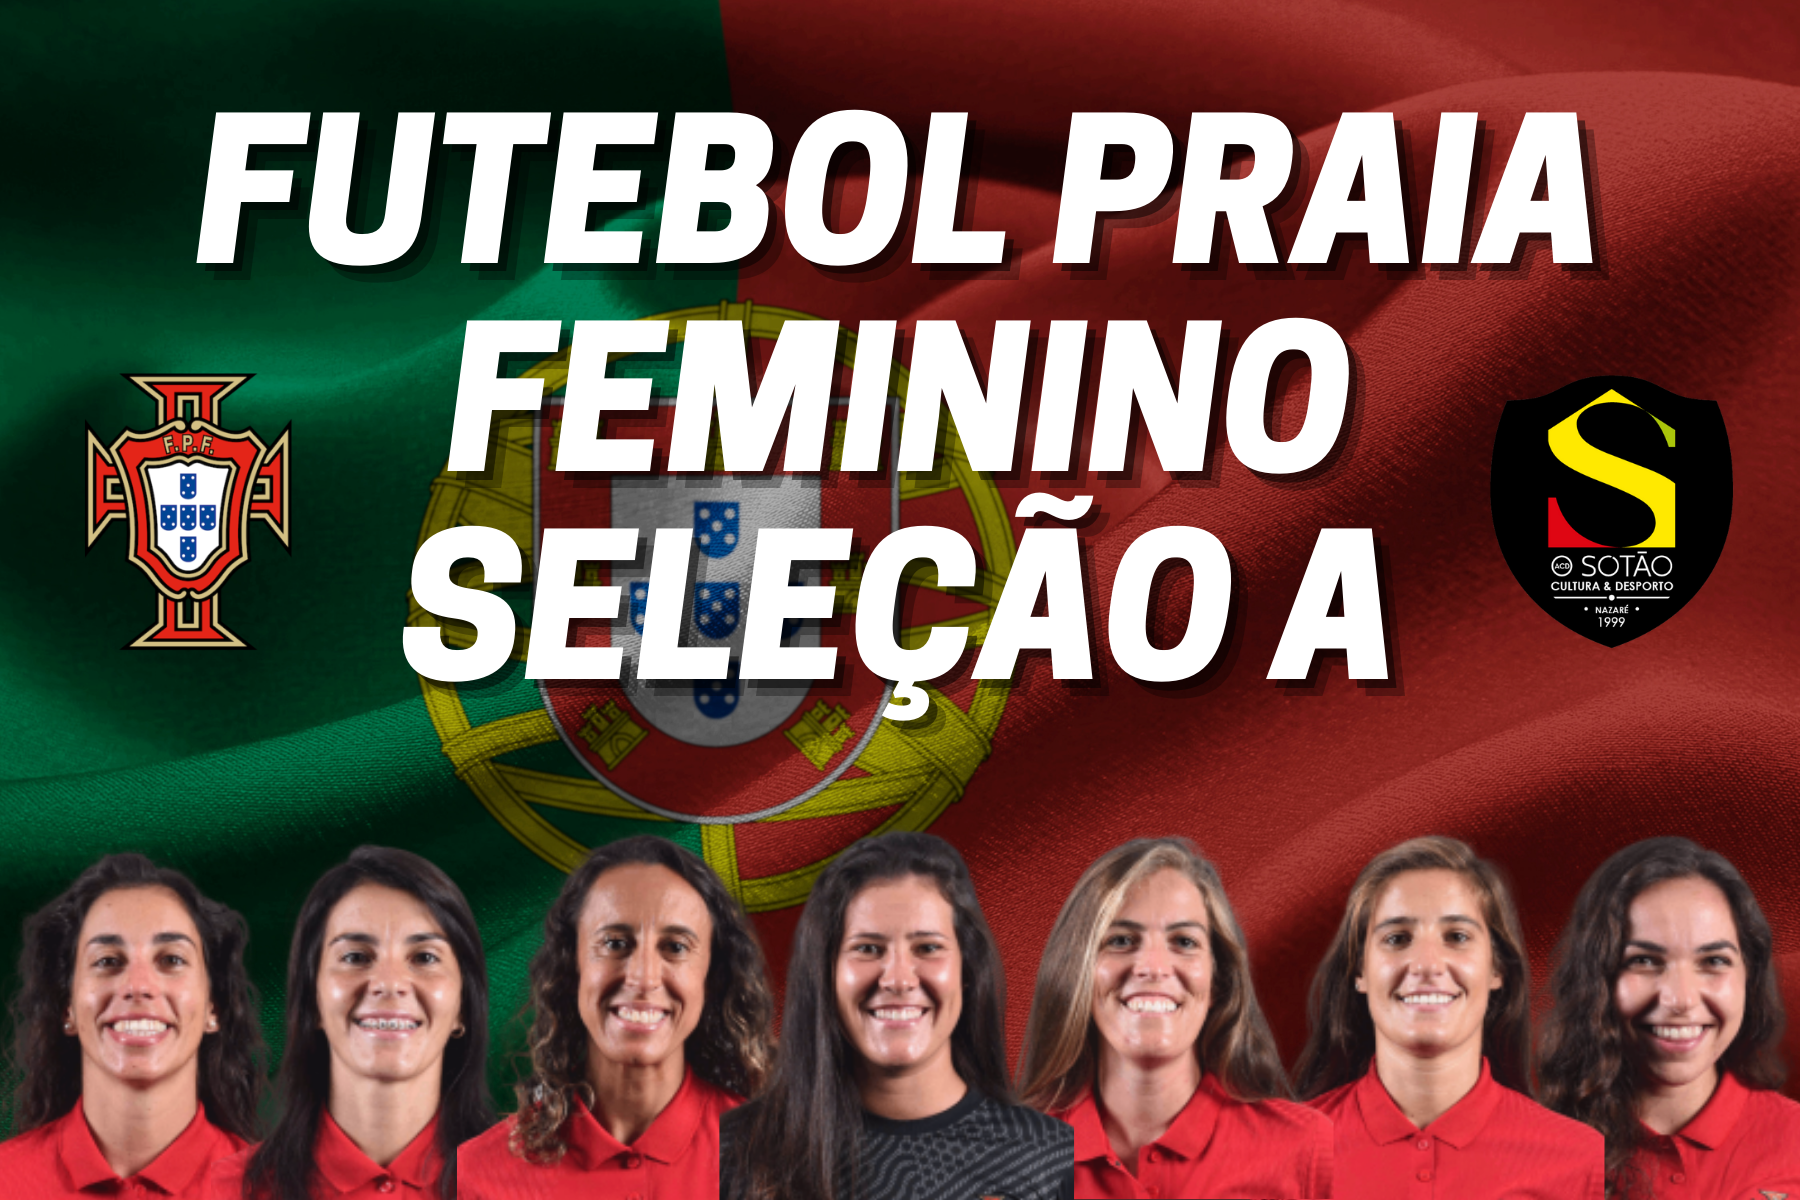 Jogadoras do ACD O Sotão convocadas para a Seleção "A" de Futebol Praia Feminino